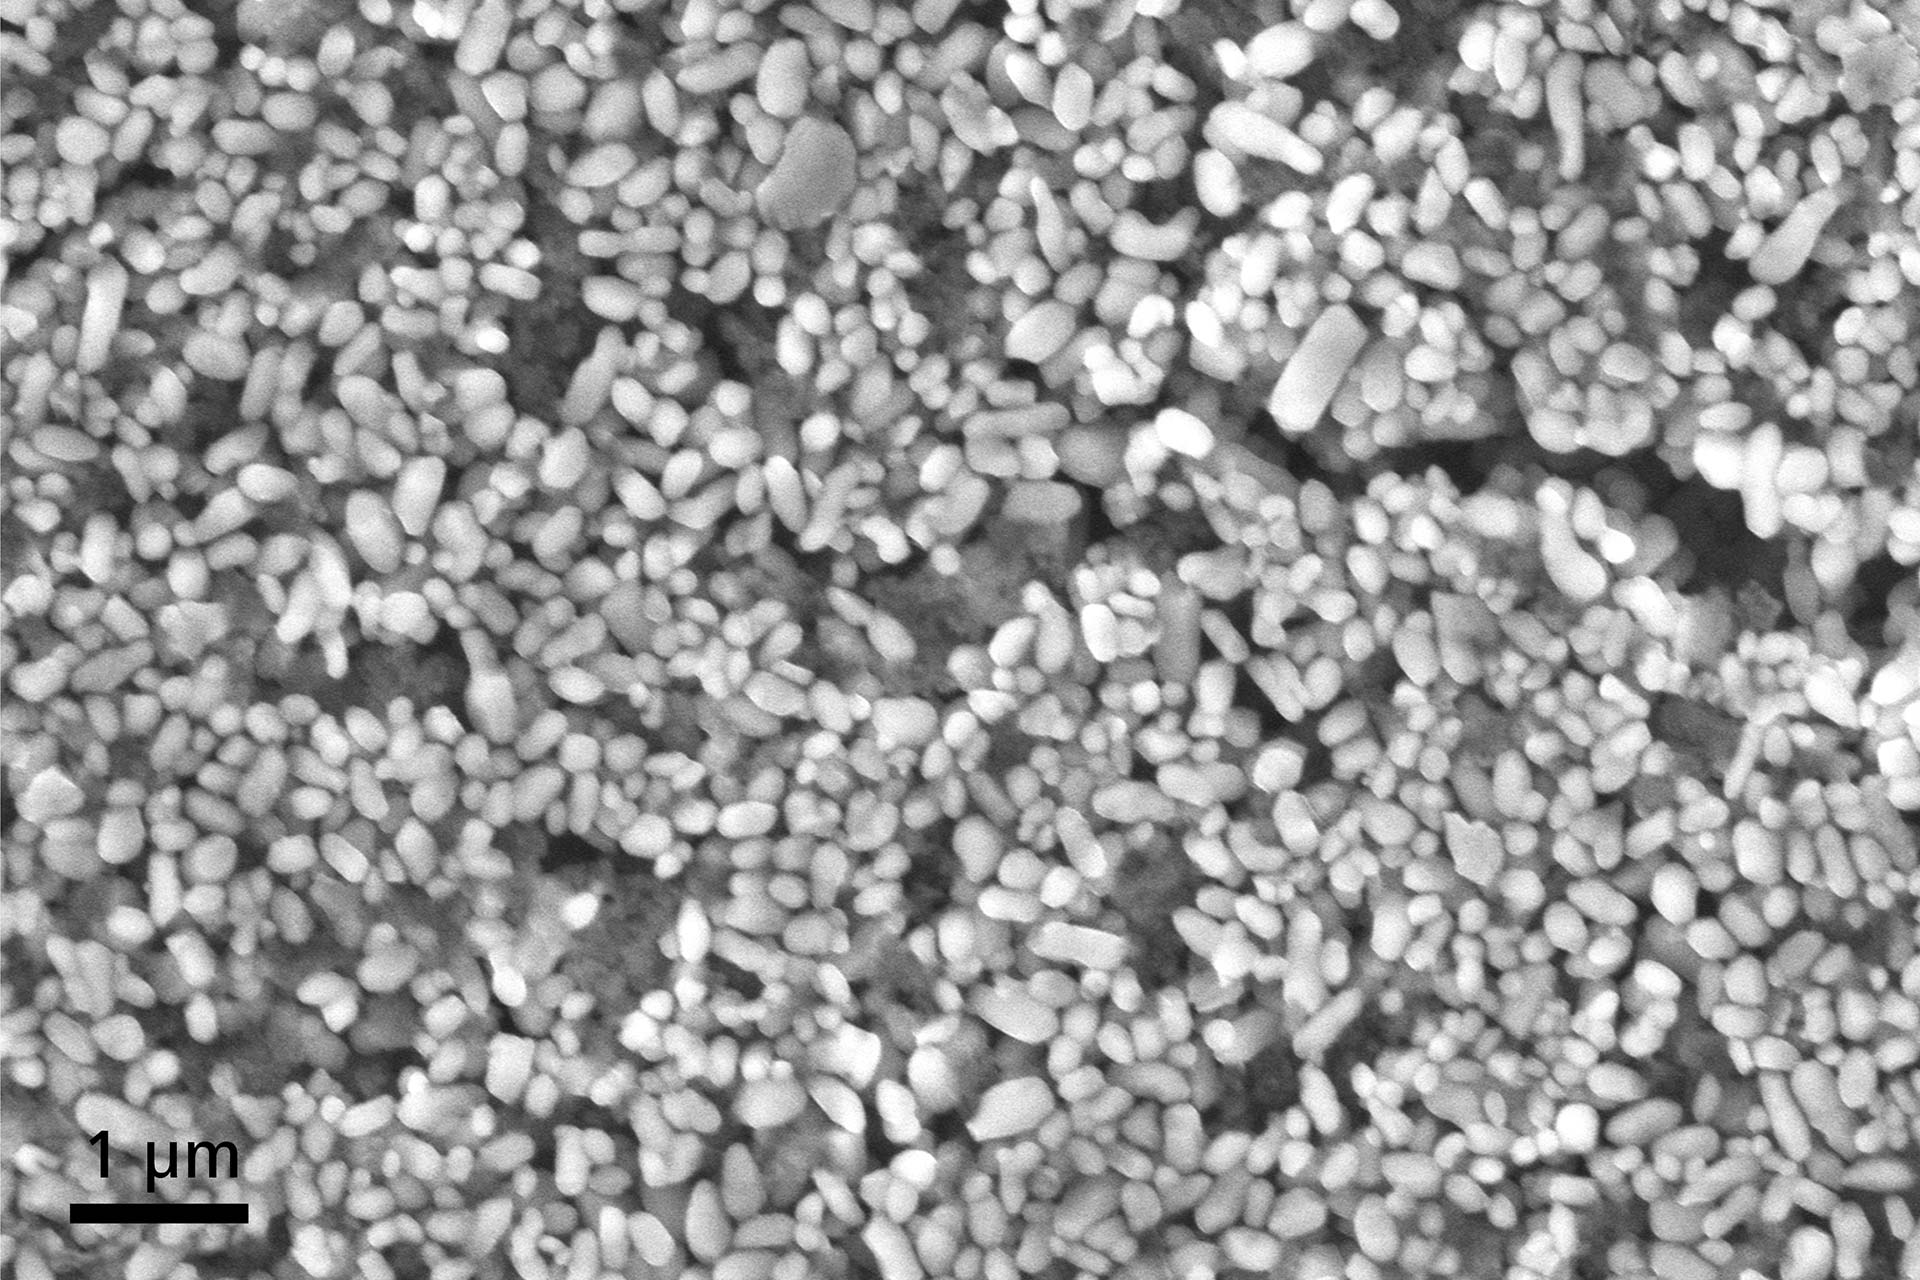 Non-conductive titanium dioxide nanoparticles